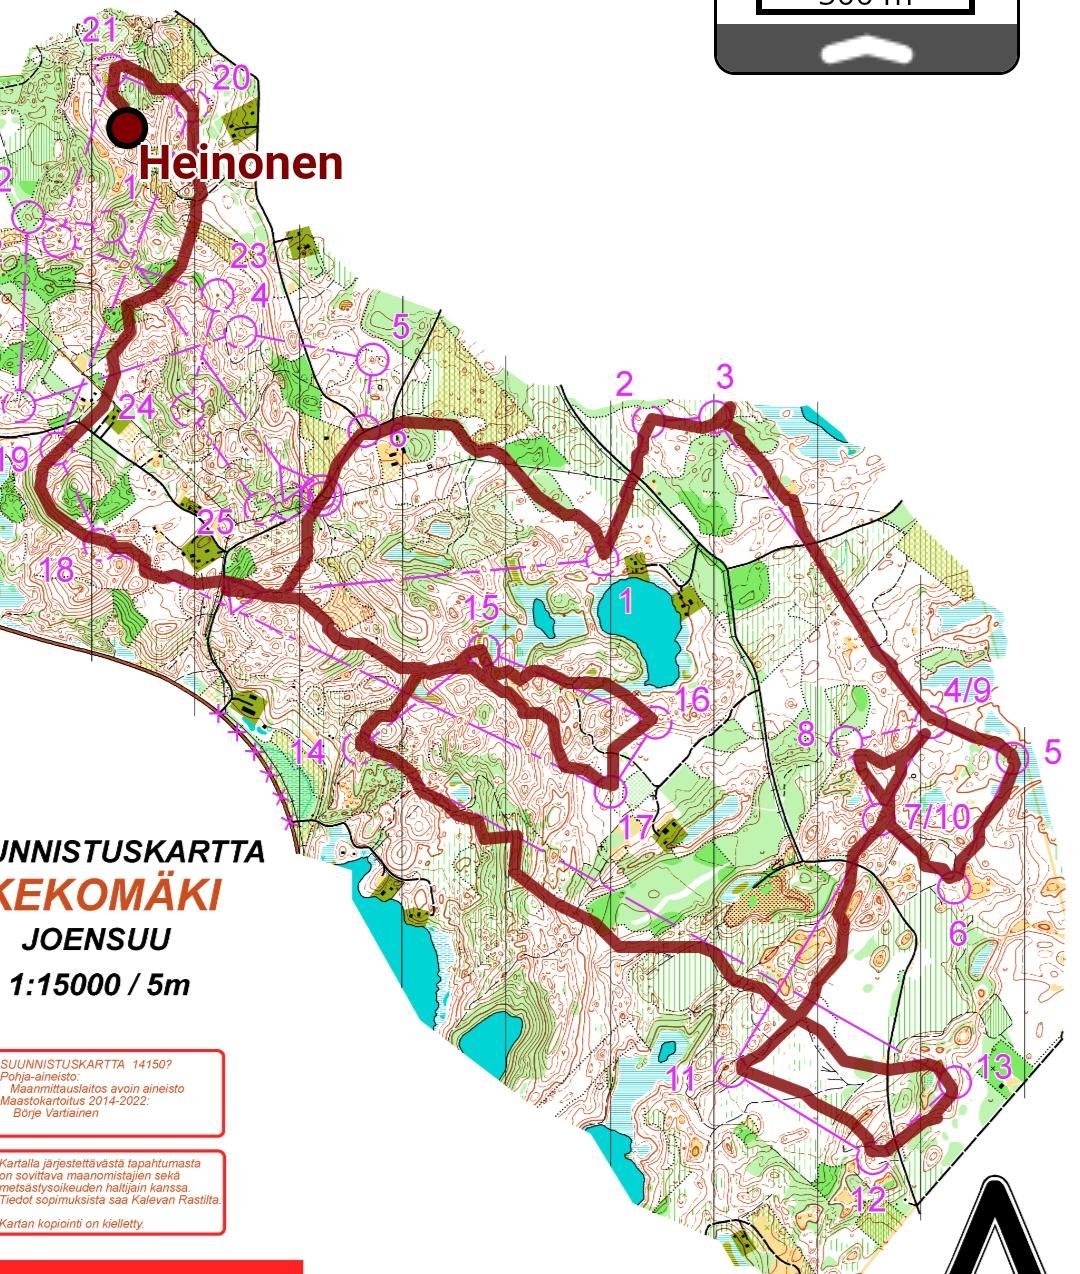 Kekomäki (24/06/2022)